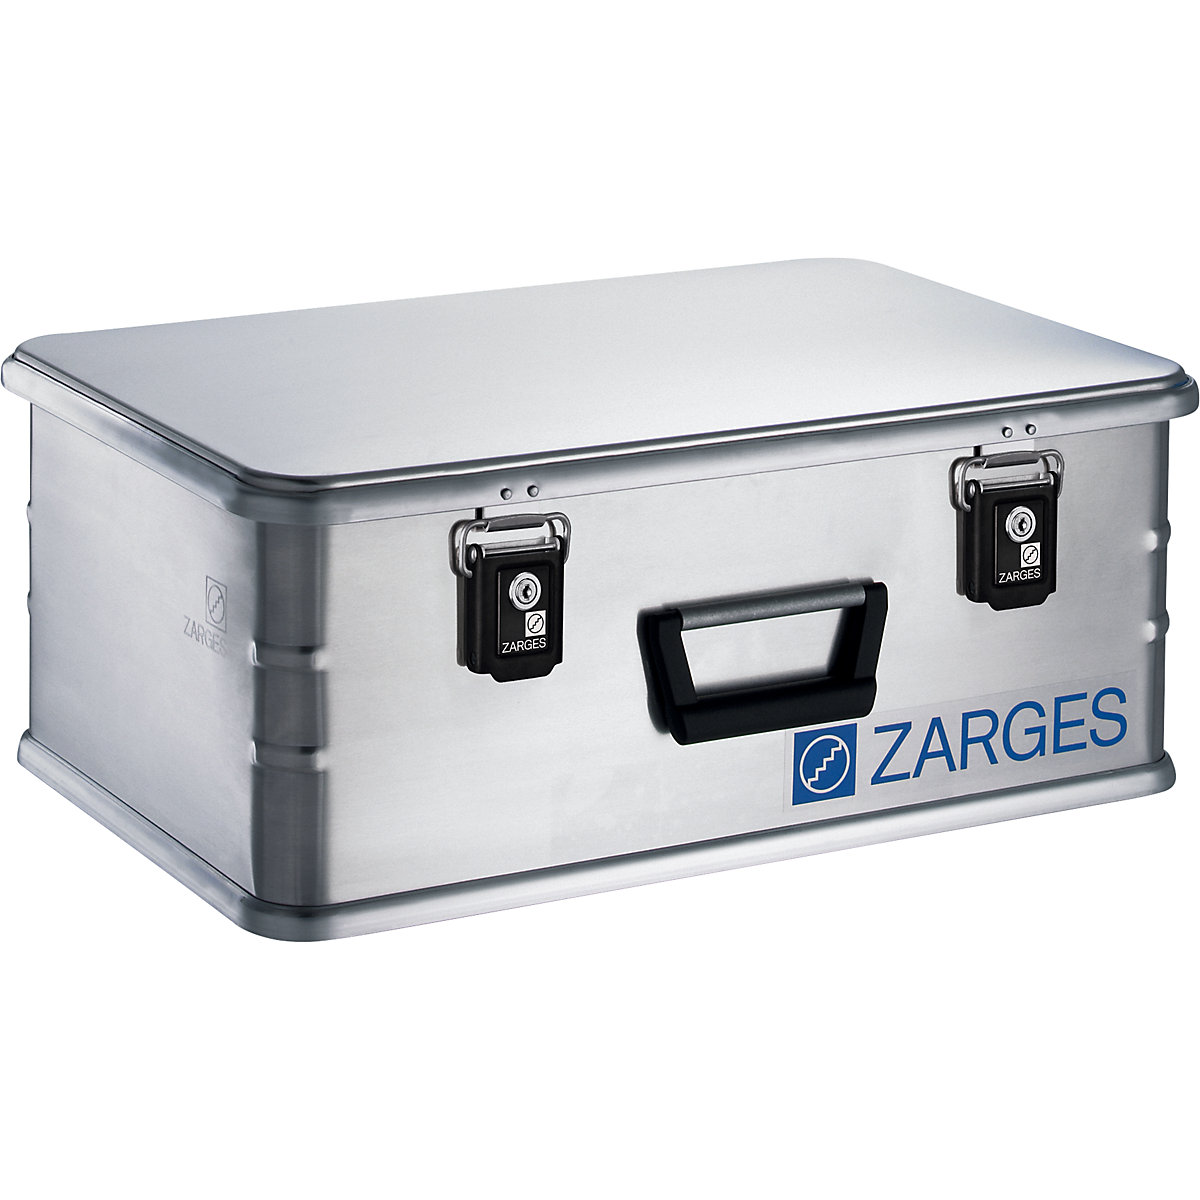 Aluminium combination box – ZARGES